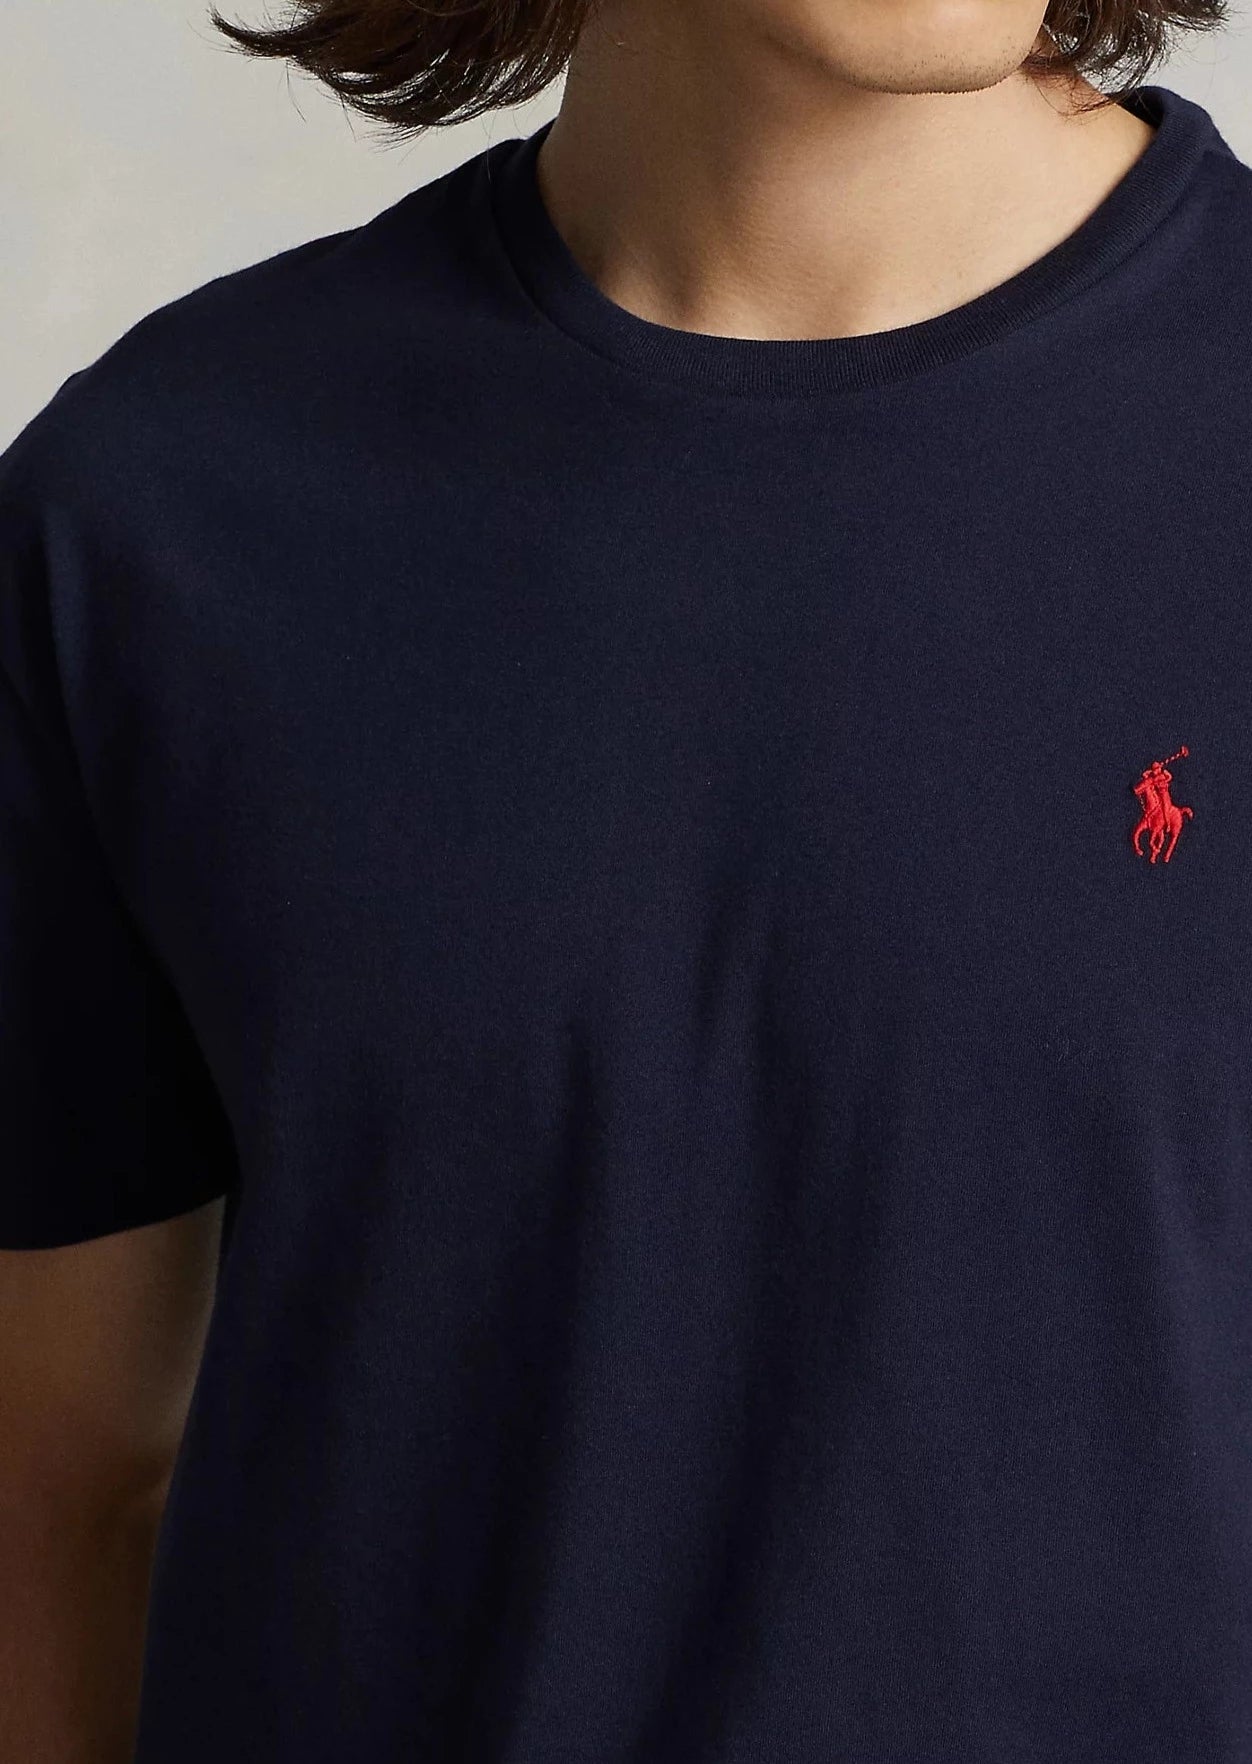 T-Shirt homme Ralph Lauren marine | Georgespaul